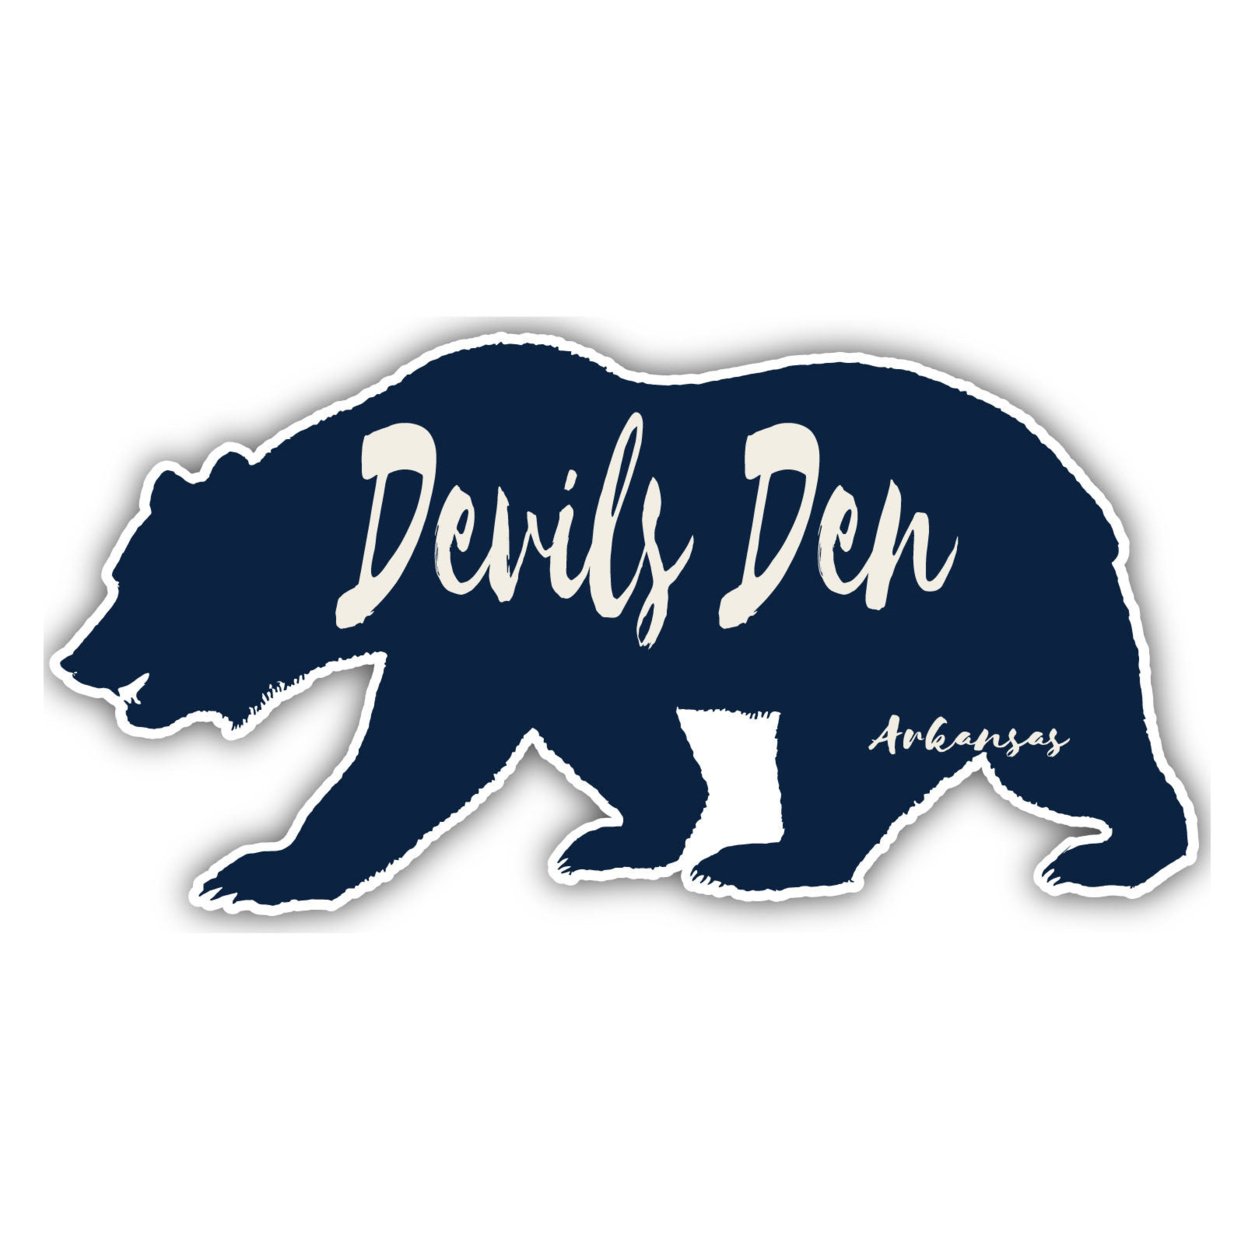 Devils Den Arkansas Souvenir Decorative Stickers (Choose Theme And Size) - Single Unit, 8-Inch, Bear